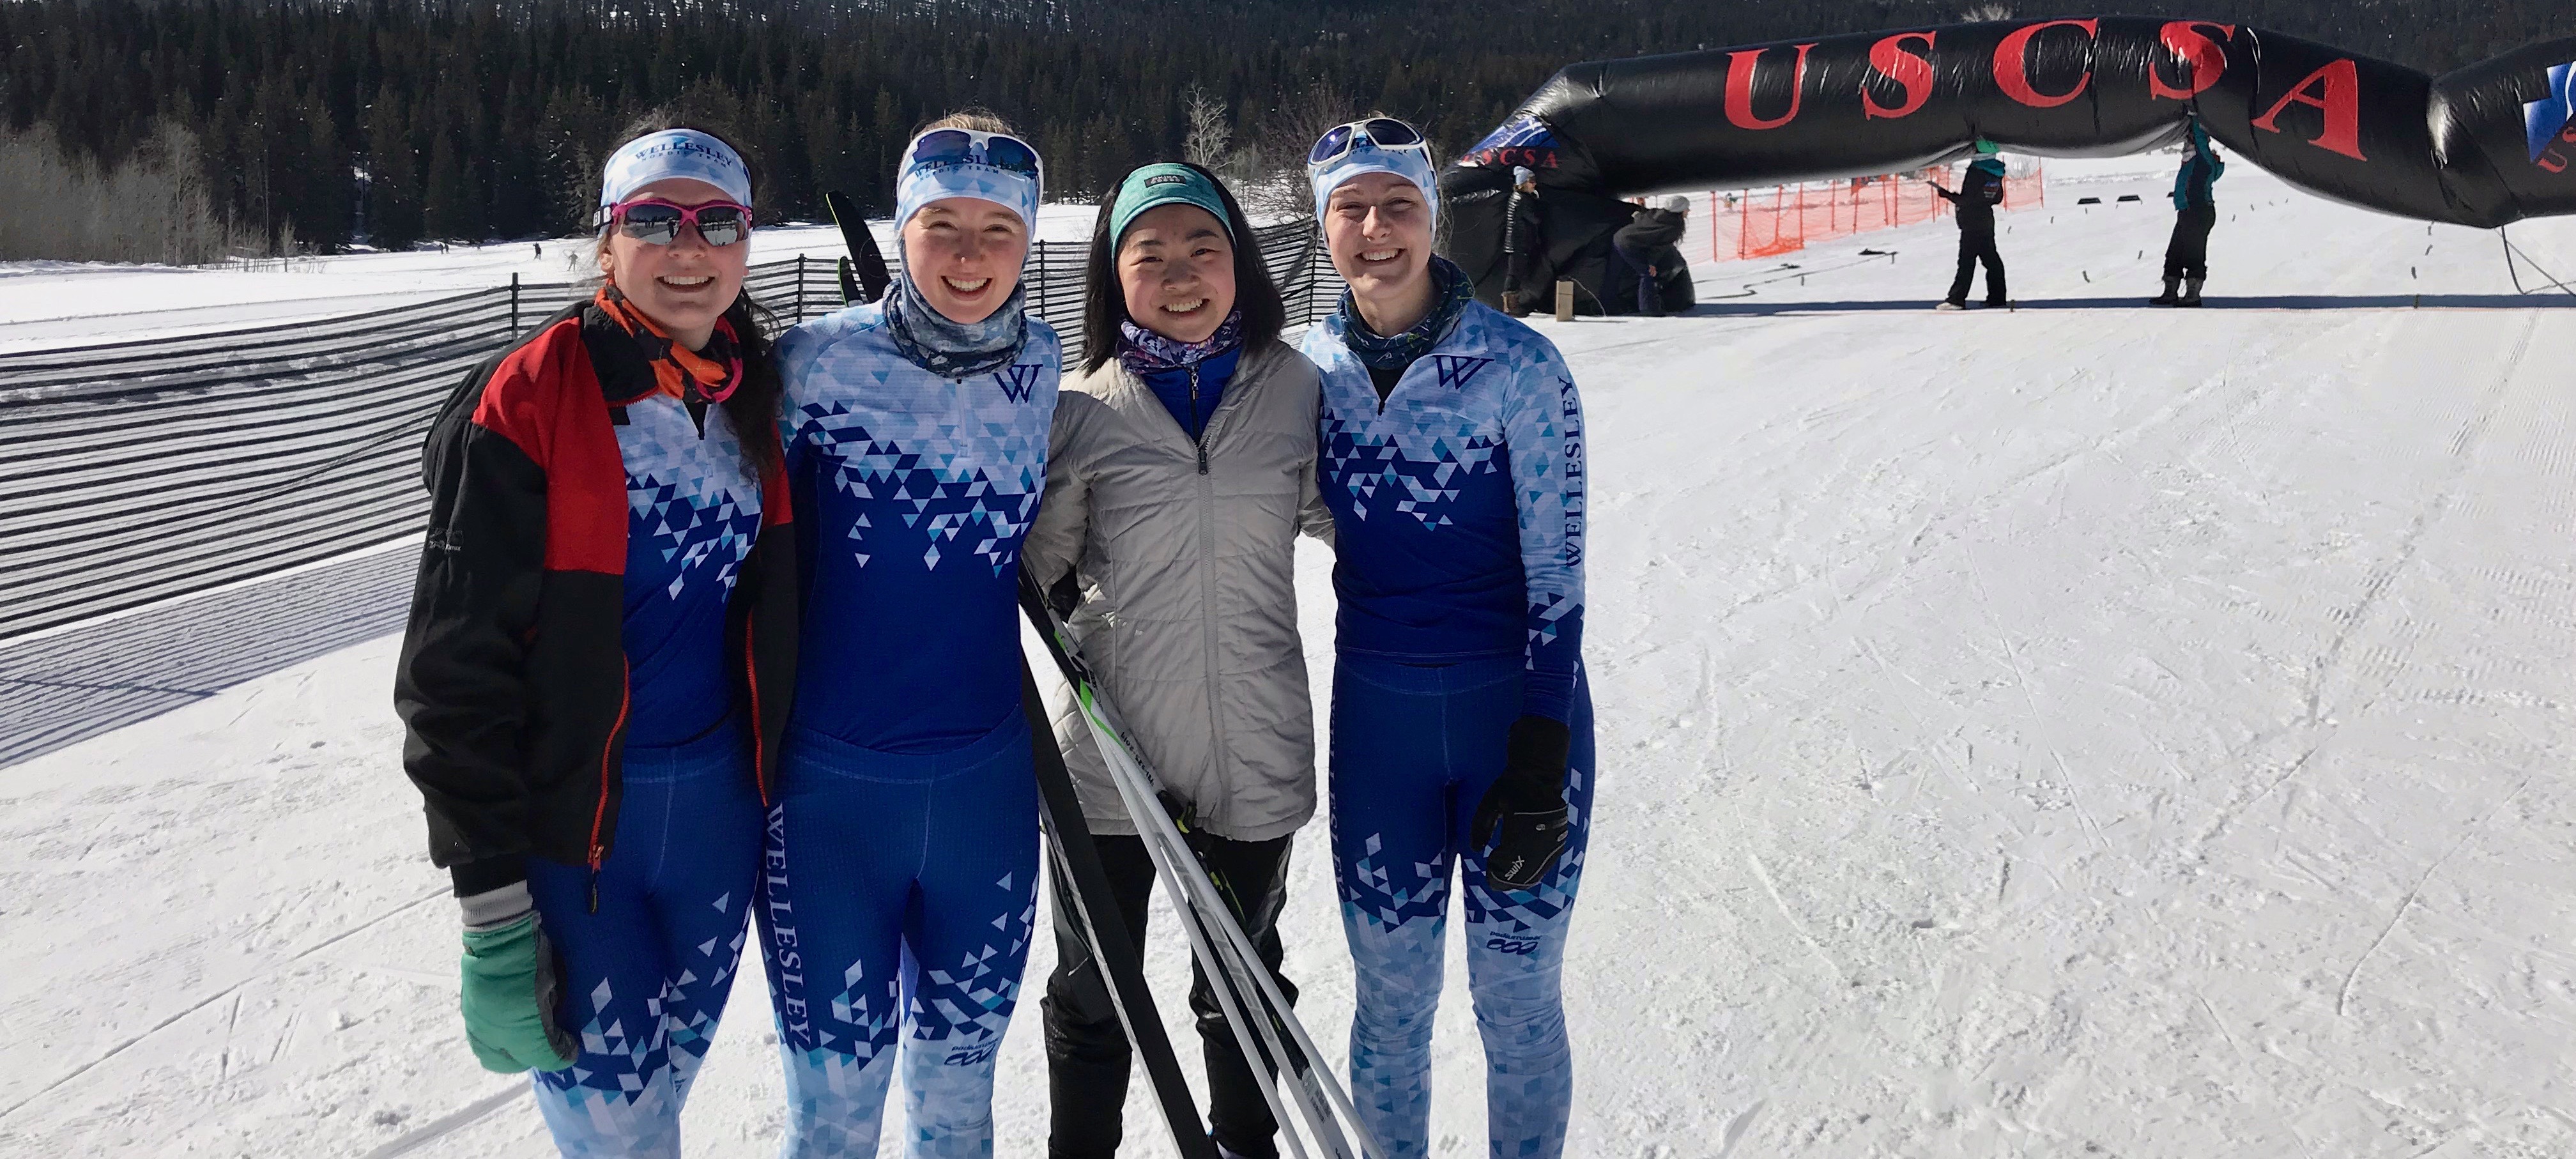 nordic ski team members smiling in the snow